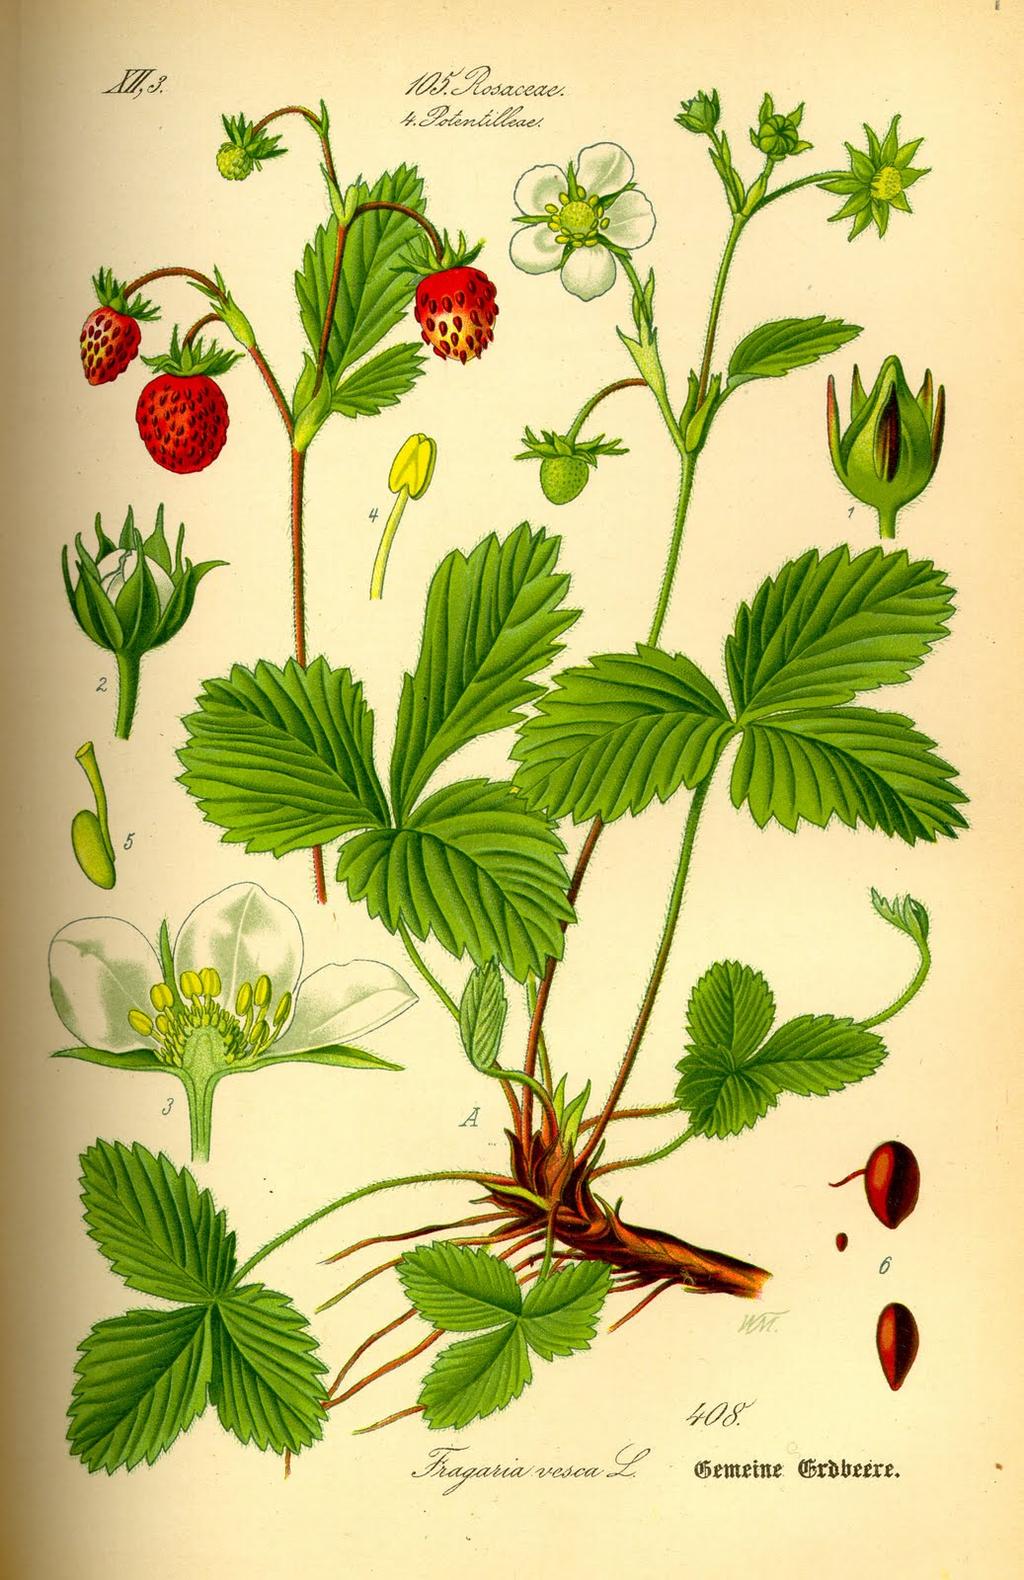 Botanical images